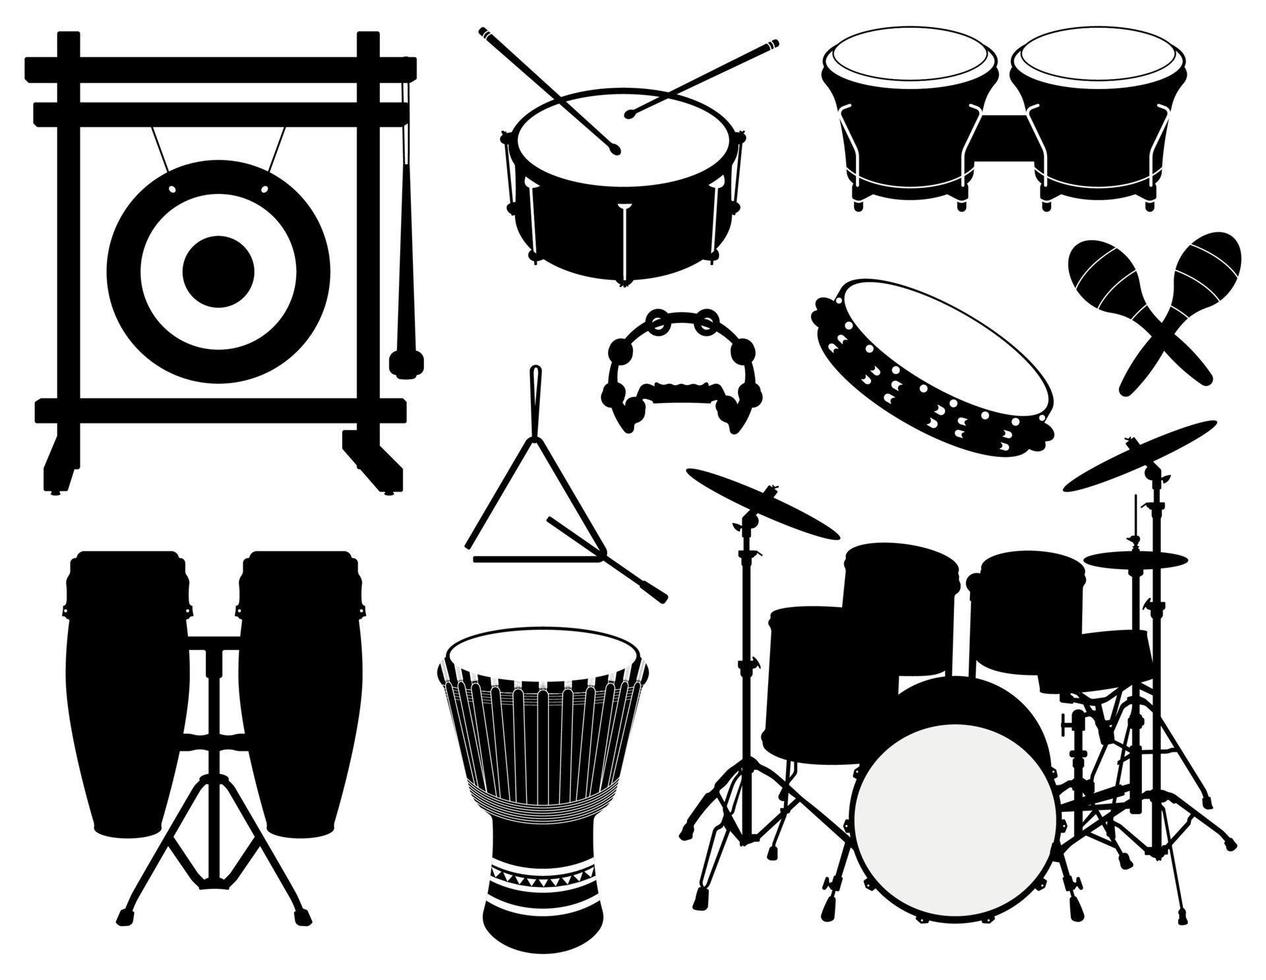 uppsättning av percussion musikalisk instrument silhuetter, trummor, gong, tamburin, triangel och maracas illustrationer vektor